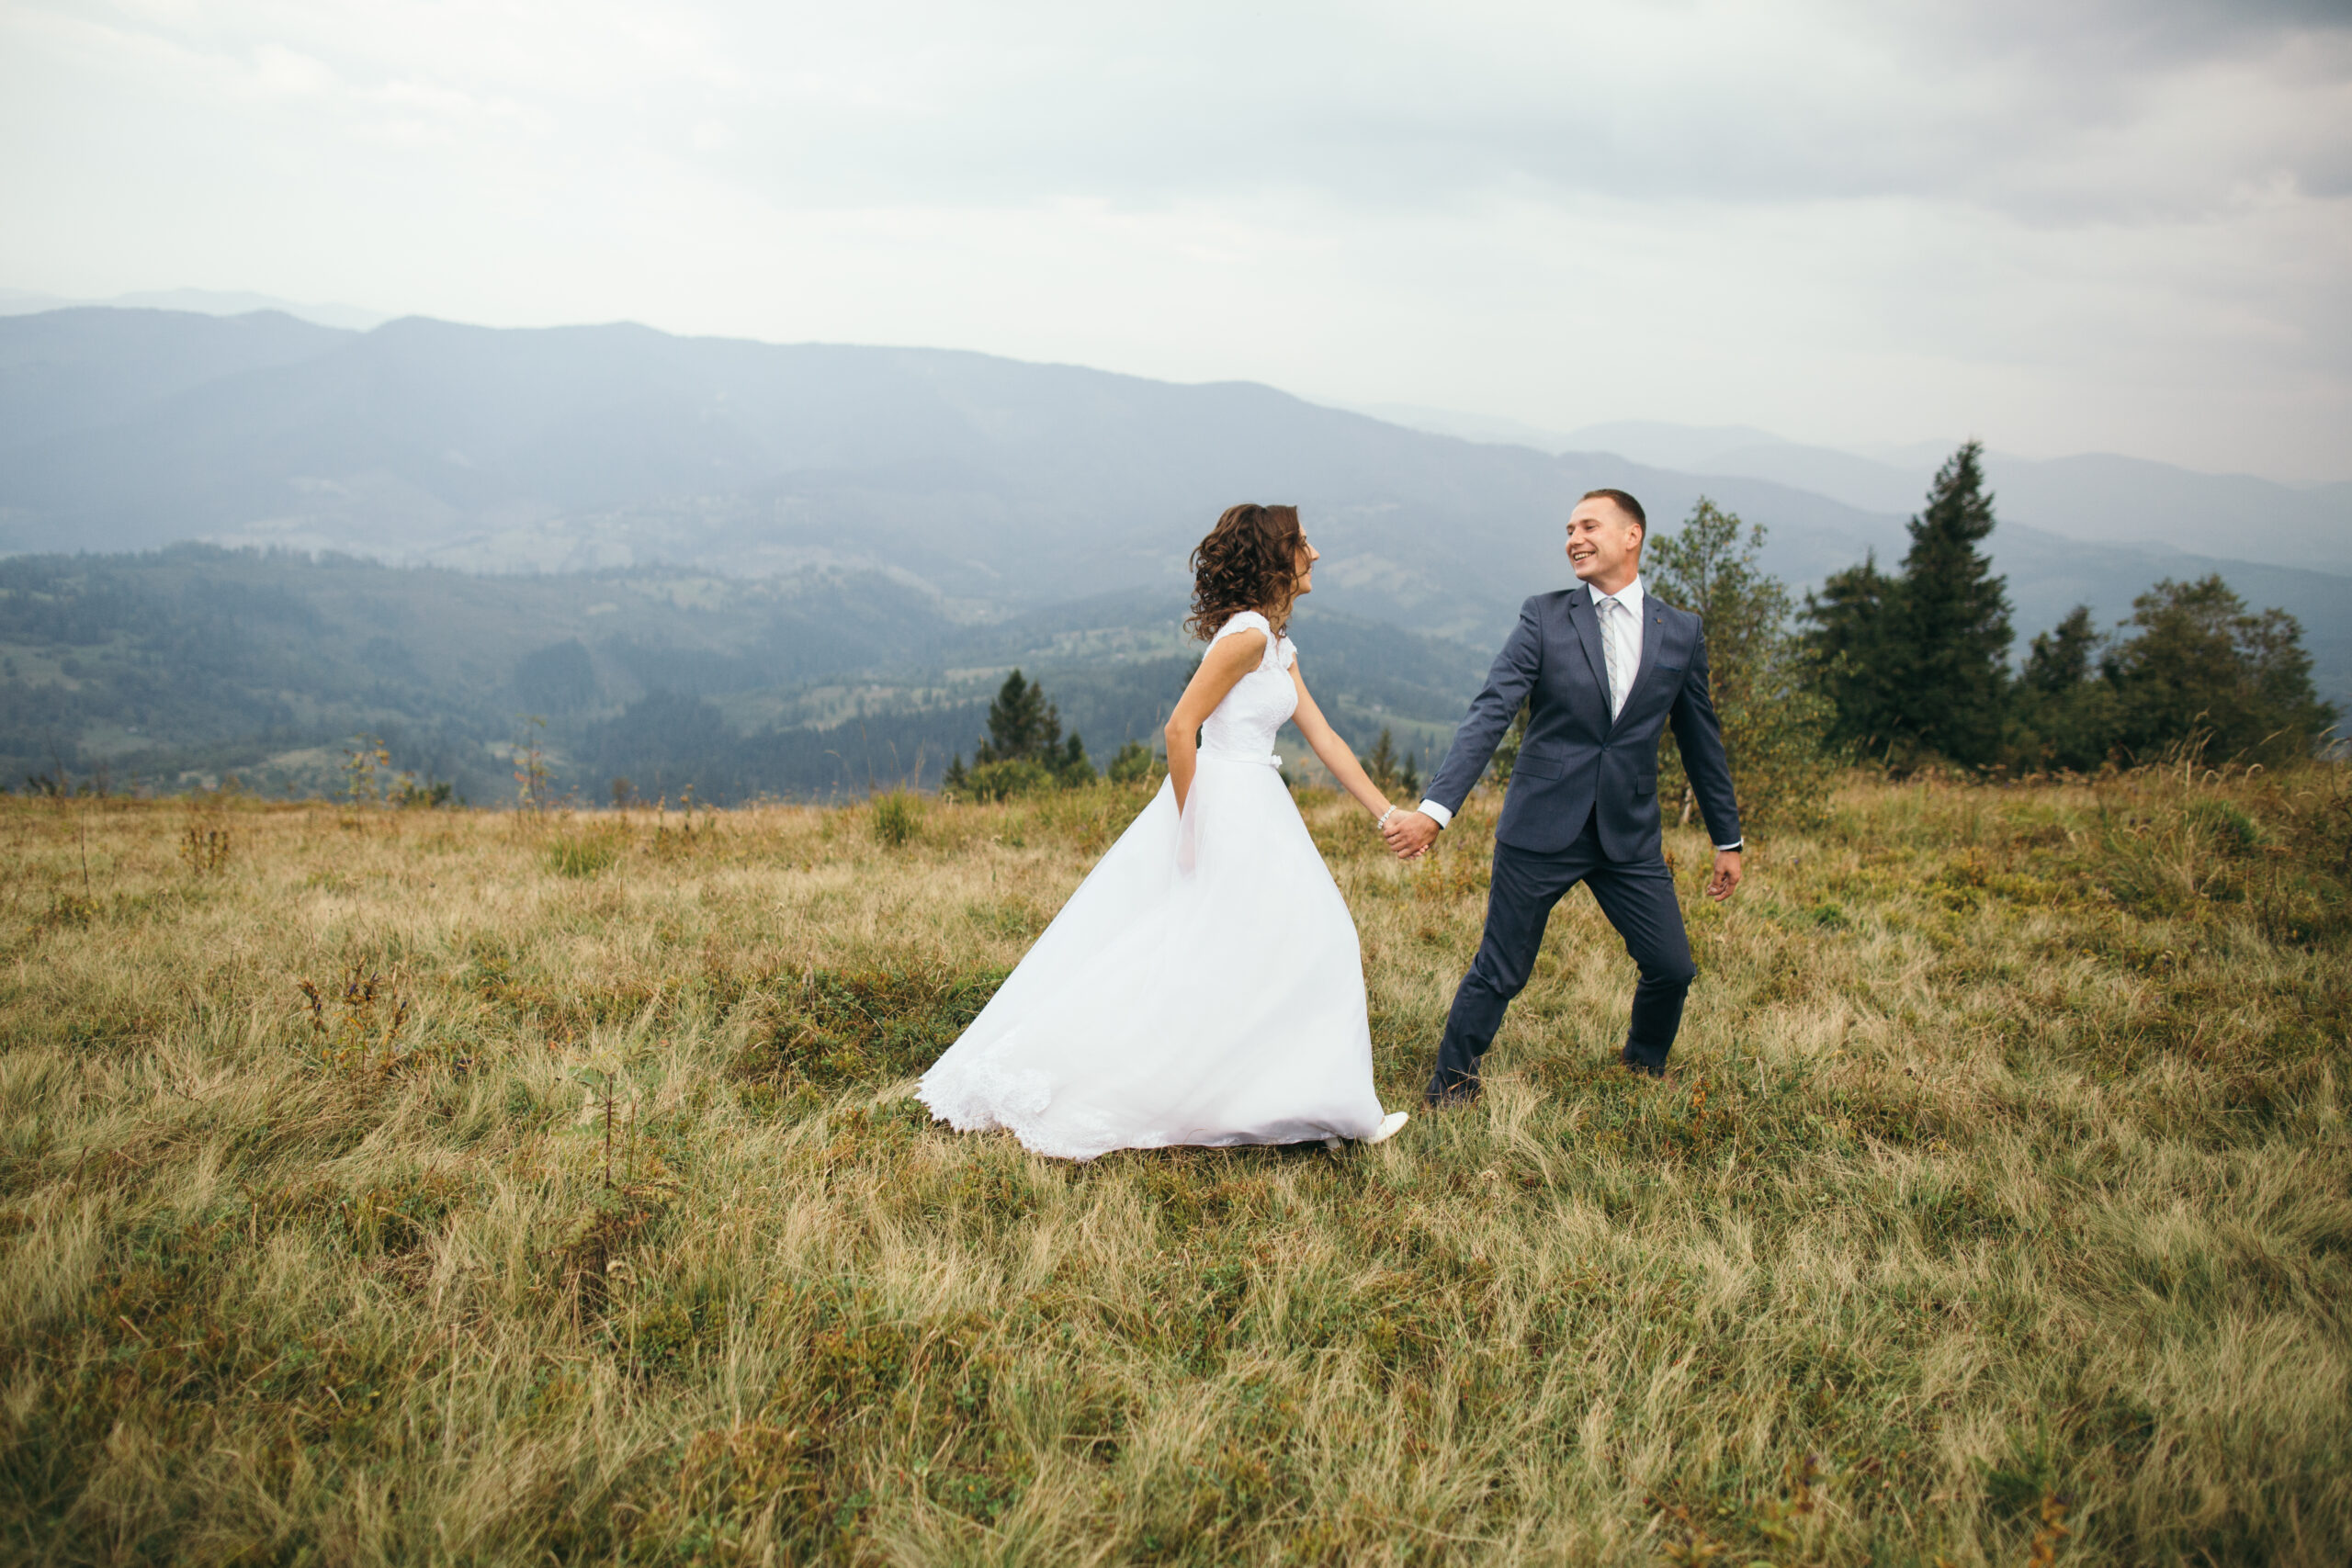 Smoky Mountain wedding themes